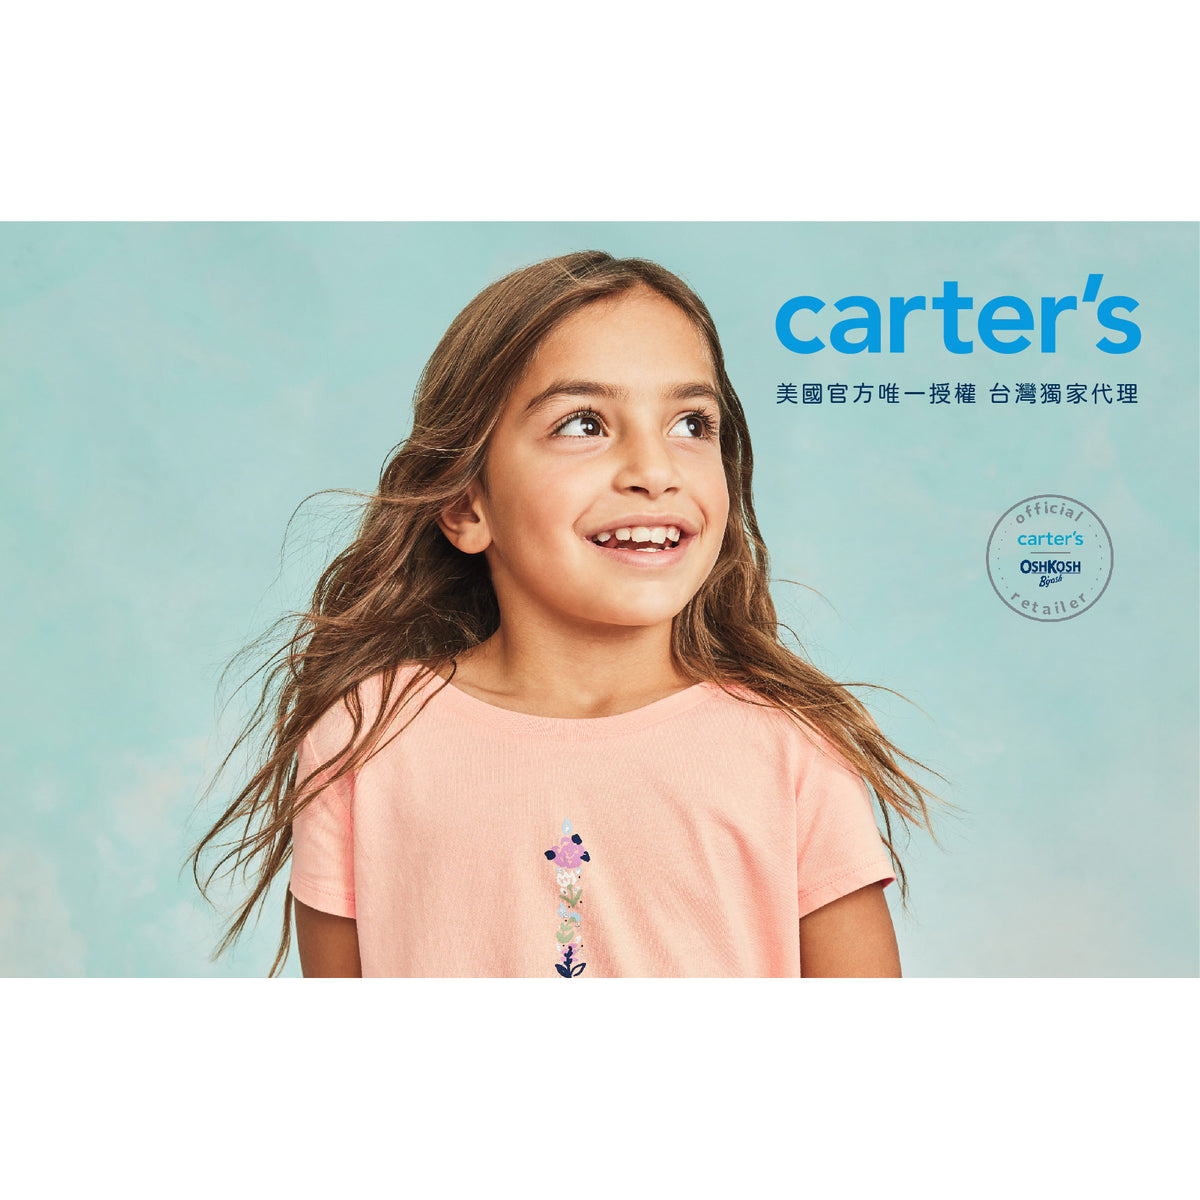 Carter's 愛與和平溫馨上衣(5-8)